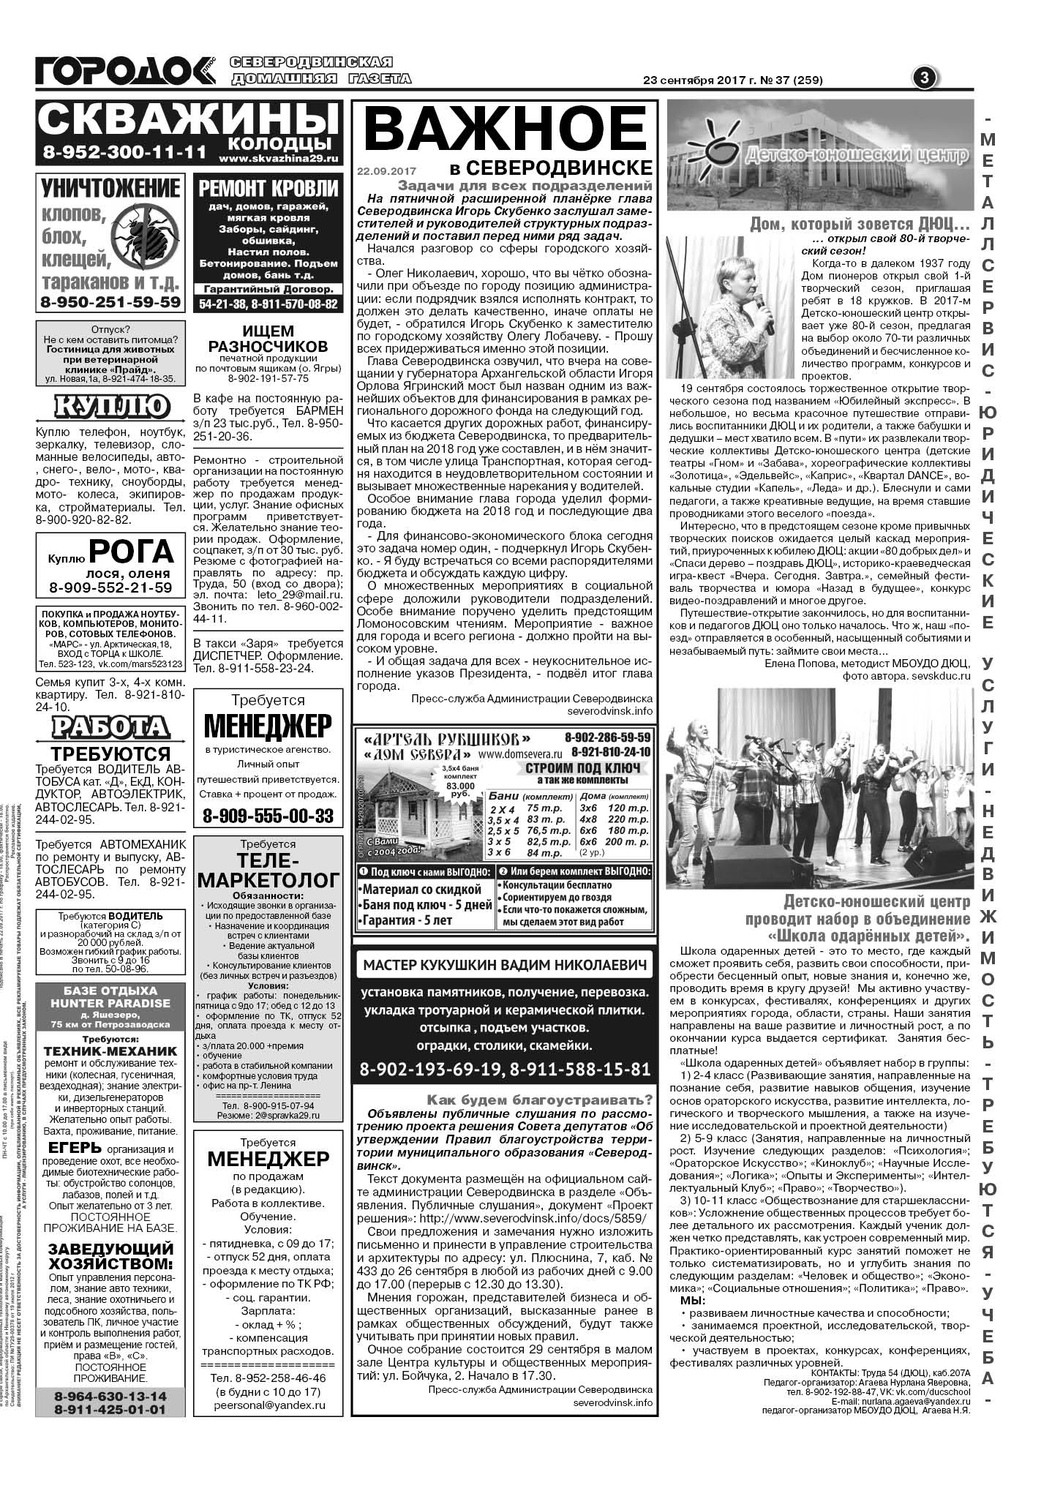 Городок плюс, выпуск номер 37 от 23 сентября 2017 года, страница 3.